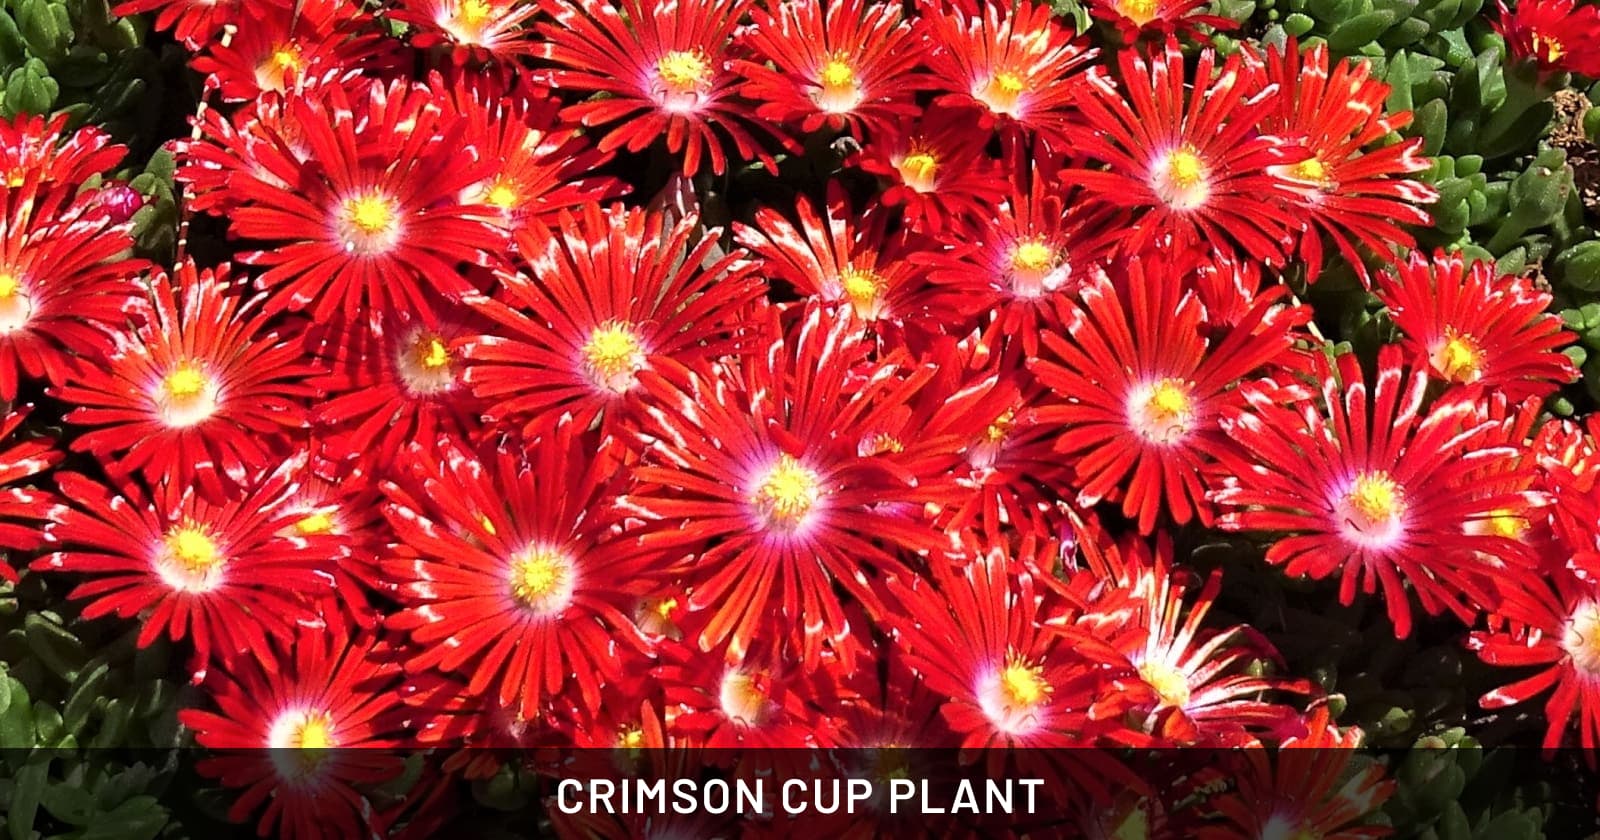 Crimson cup plant